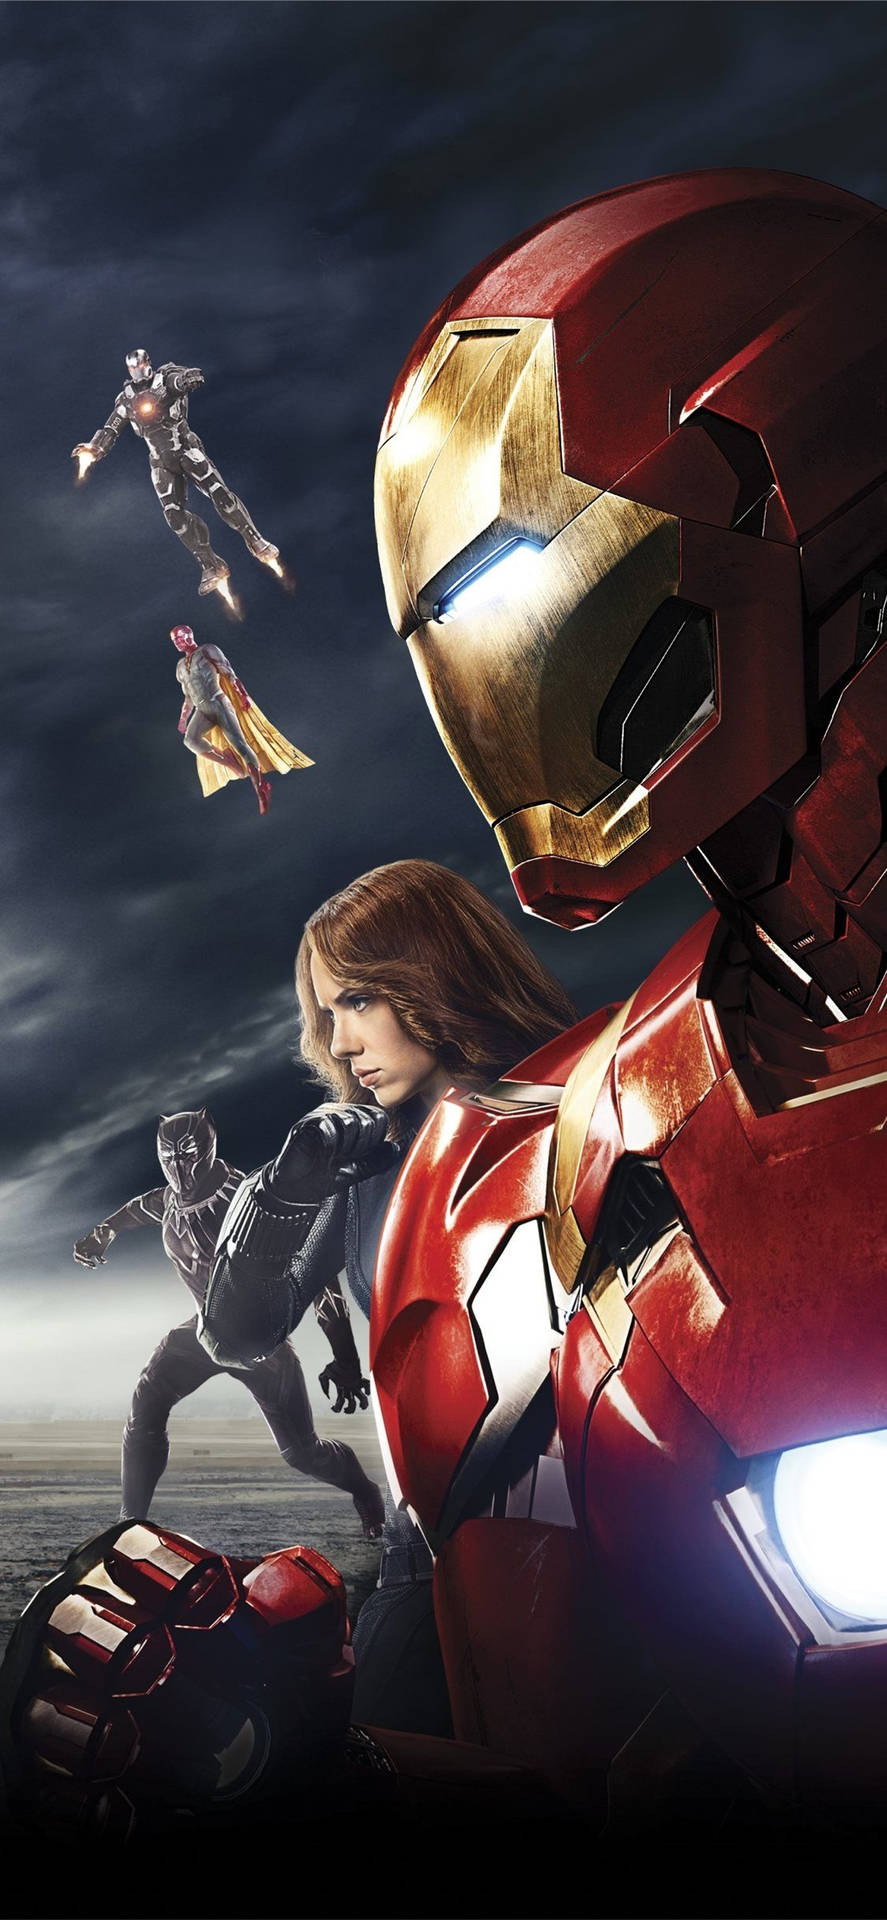 Avengers iPhone X Sort Sky Tapetet skaber et strejf af mystik. Wallpaper